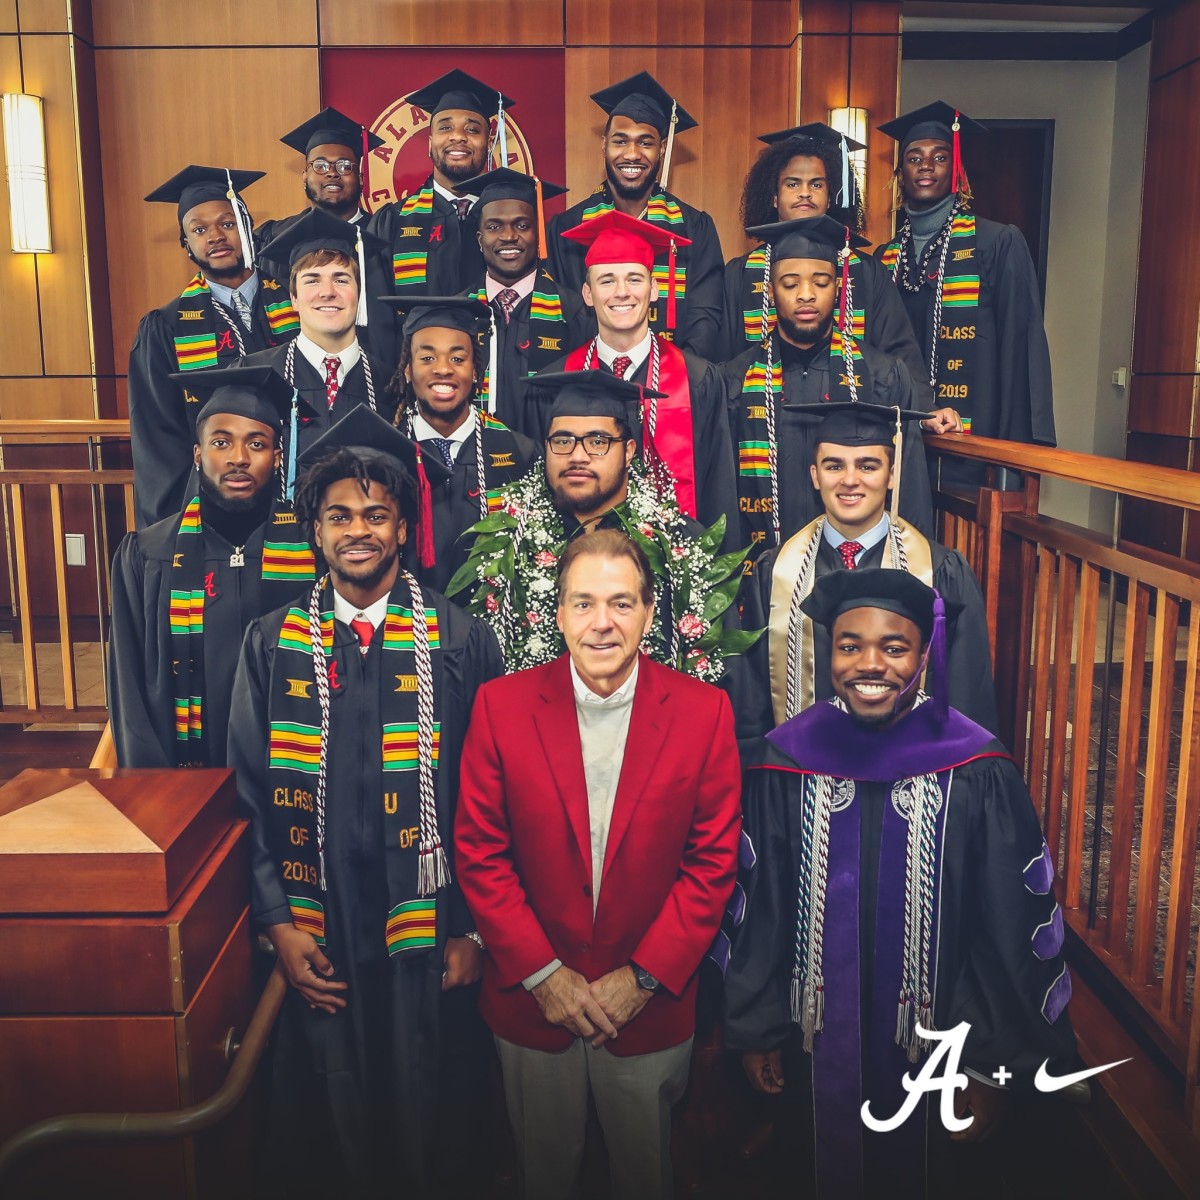 The latest Alabama football graduates